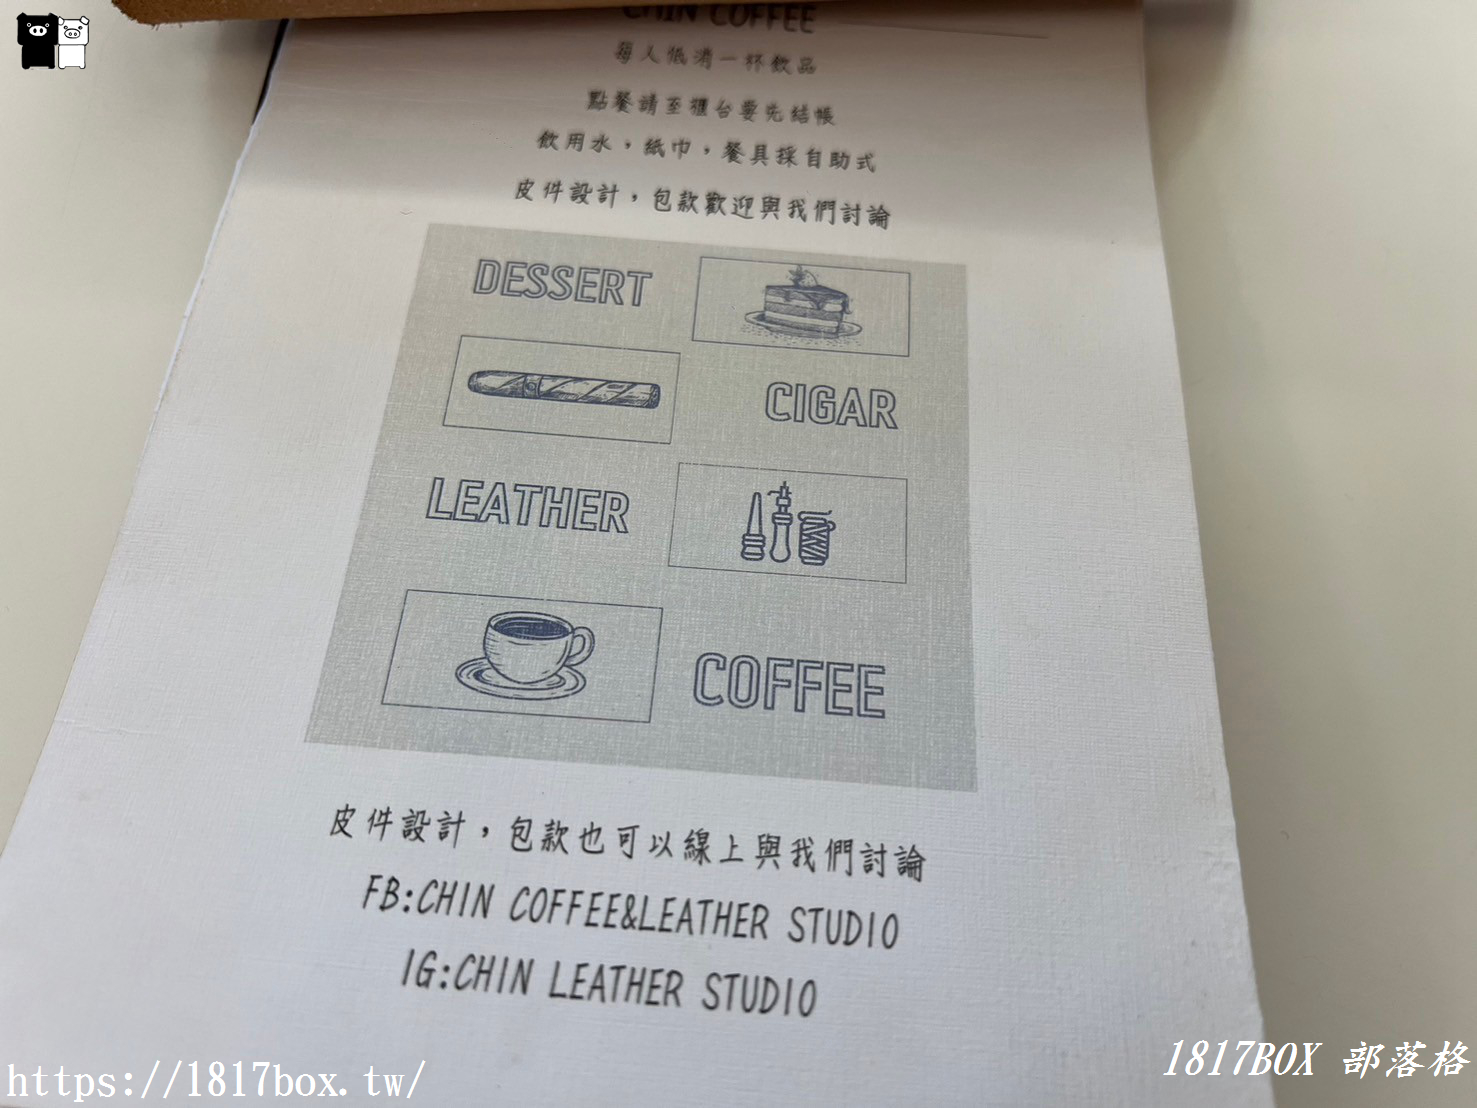 【彰化市】Chin-coffee & leather studio。沁-皮革文創咖啡